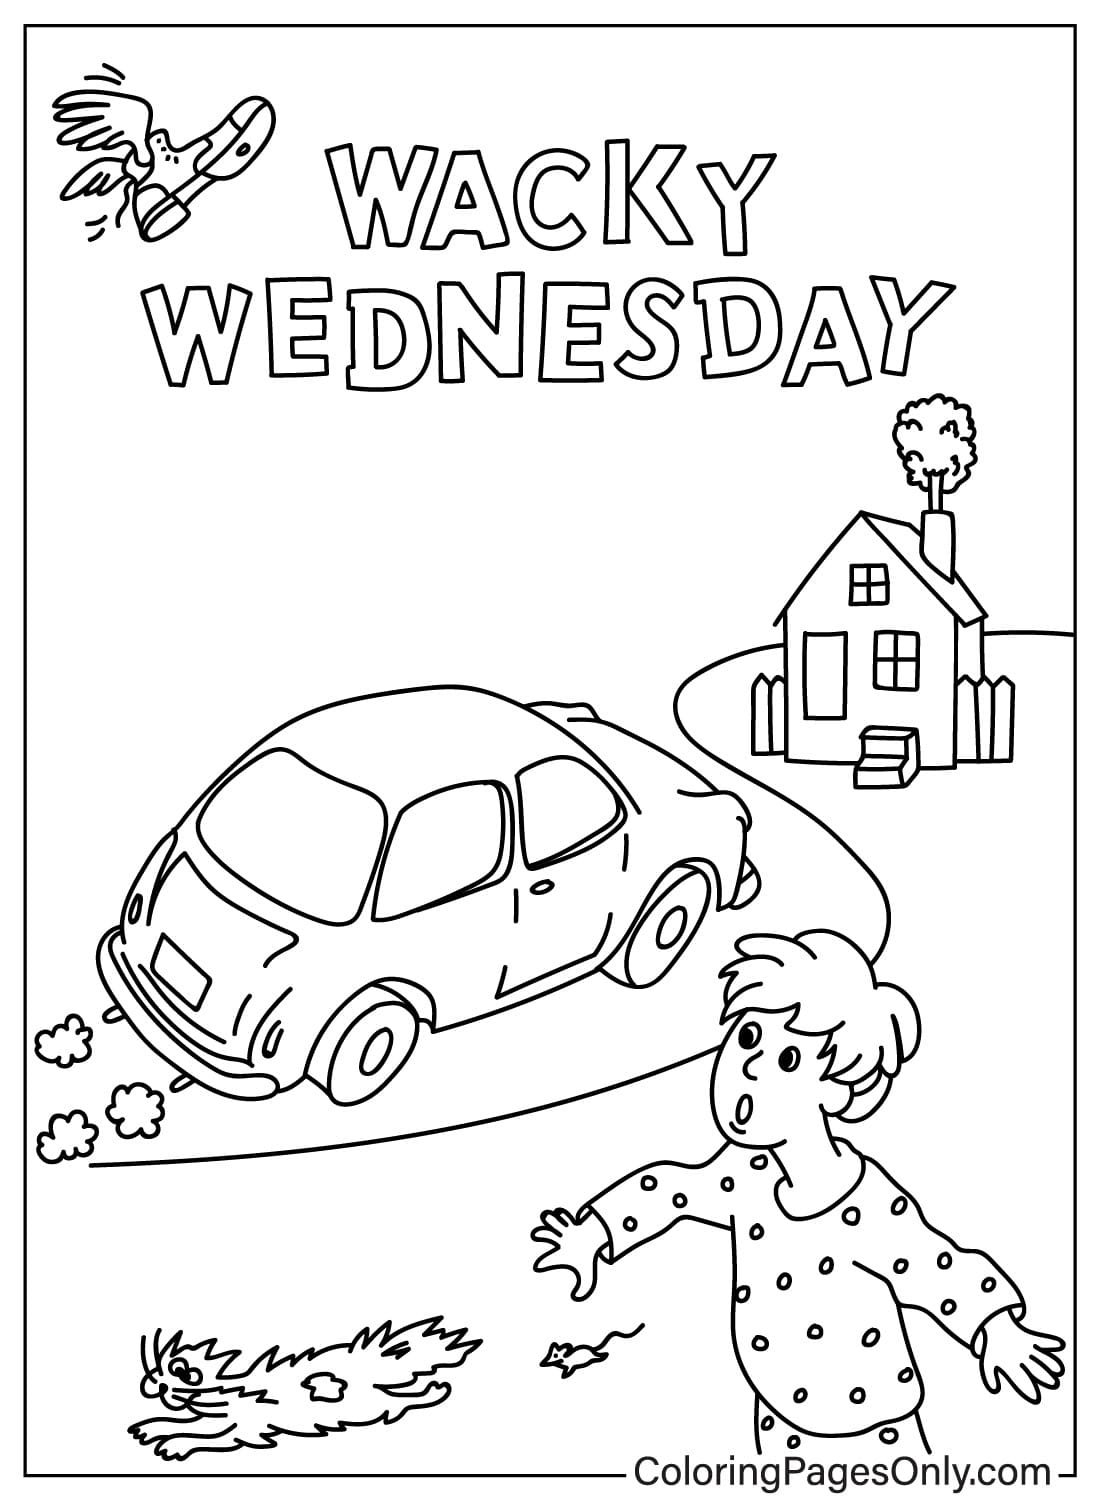 Wacky Wednesday kleurplaat om af te drukken van Wacky Wednesday